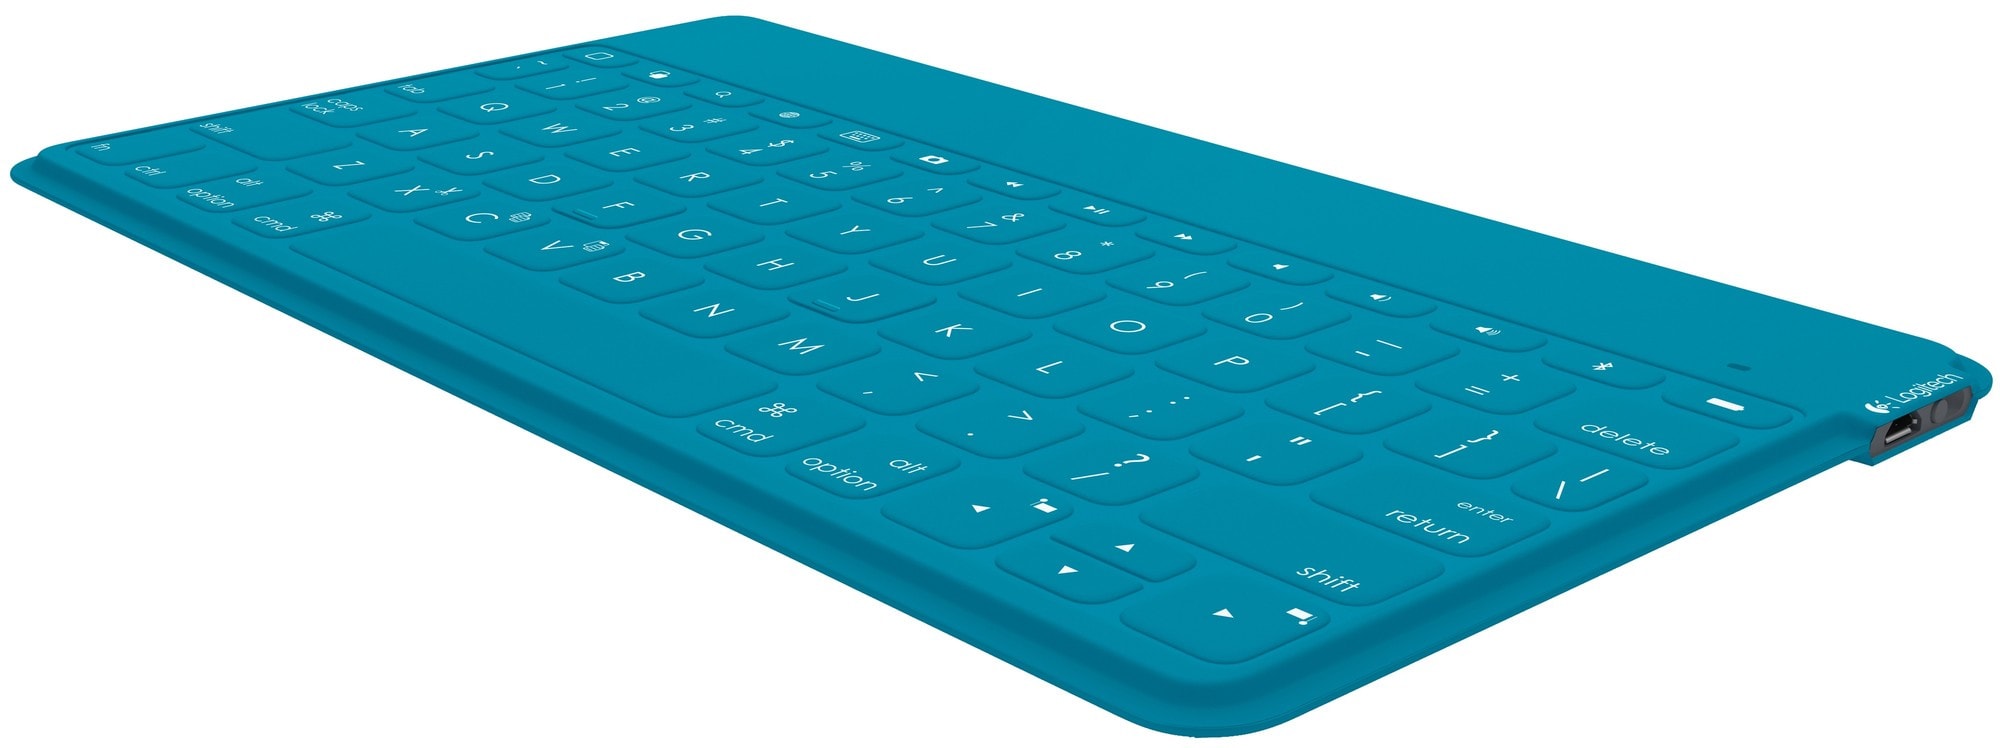 Logitech Keys-To-Go tastatur til iPad - blå | Elgiganten